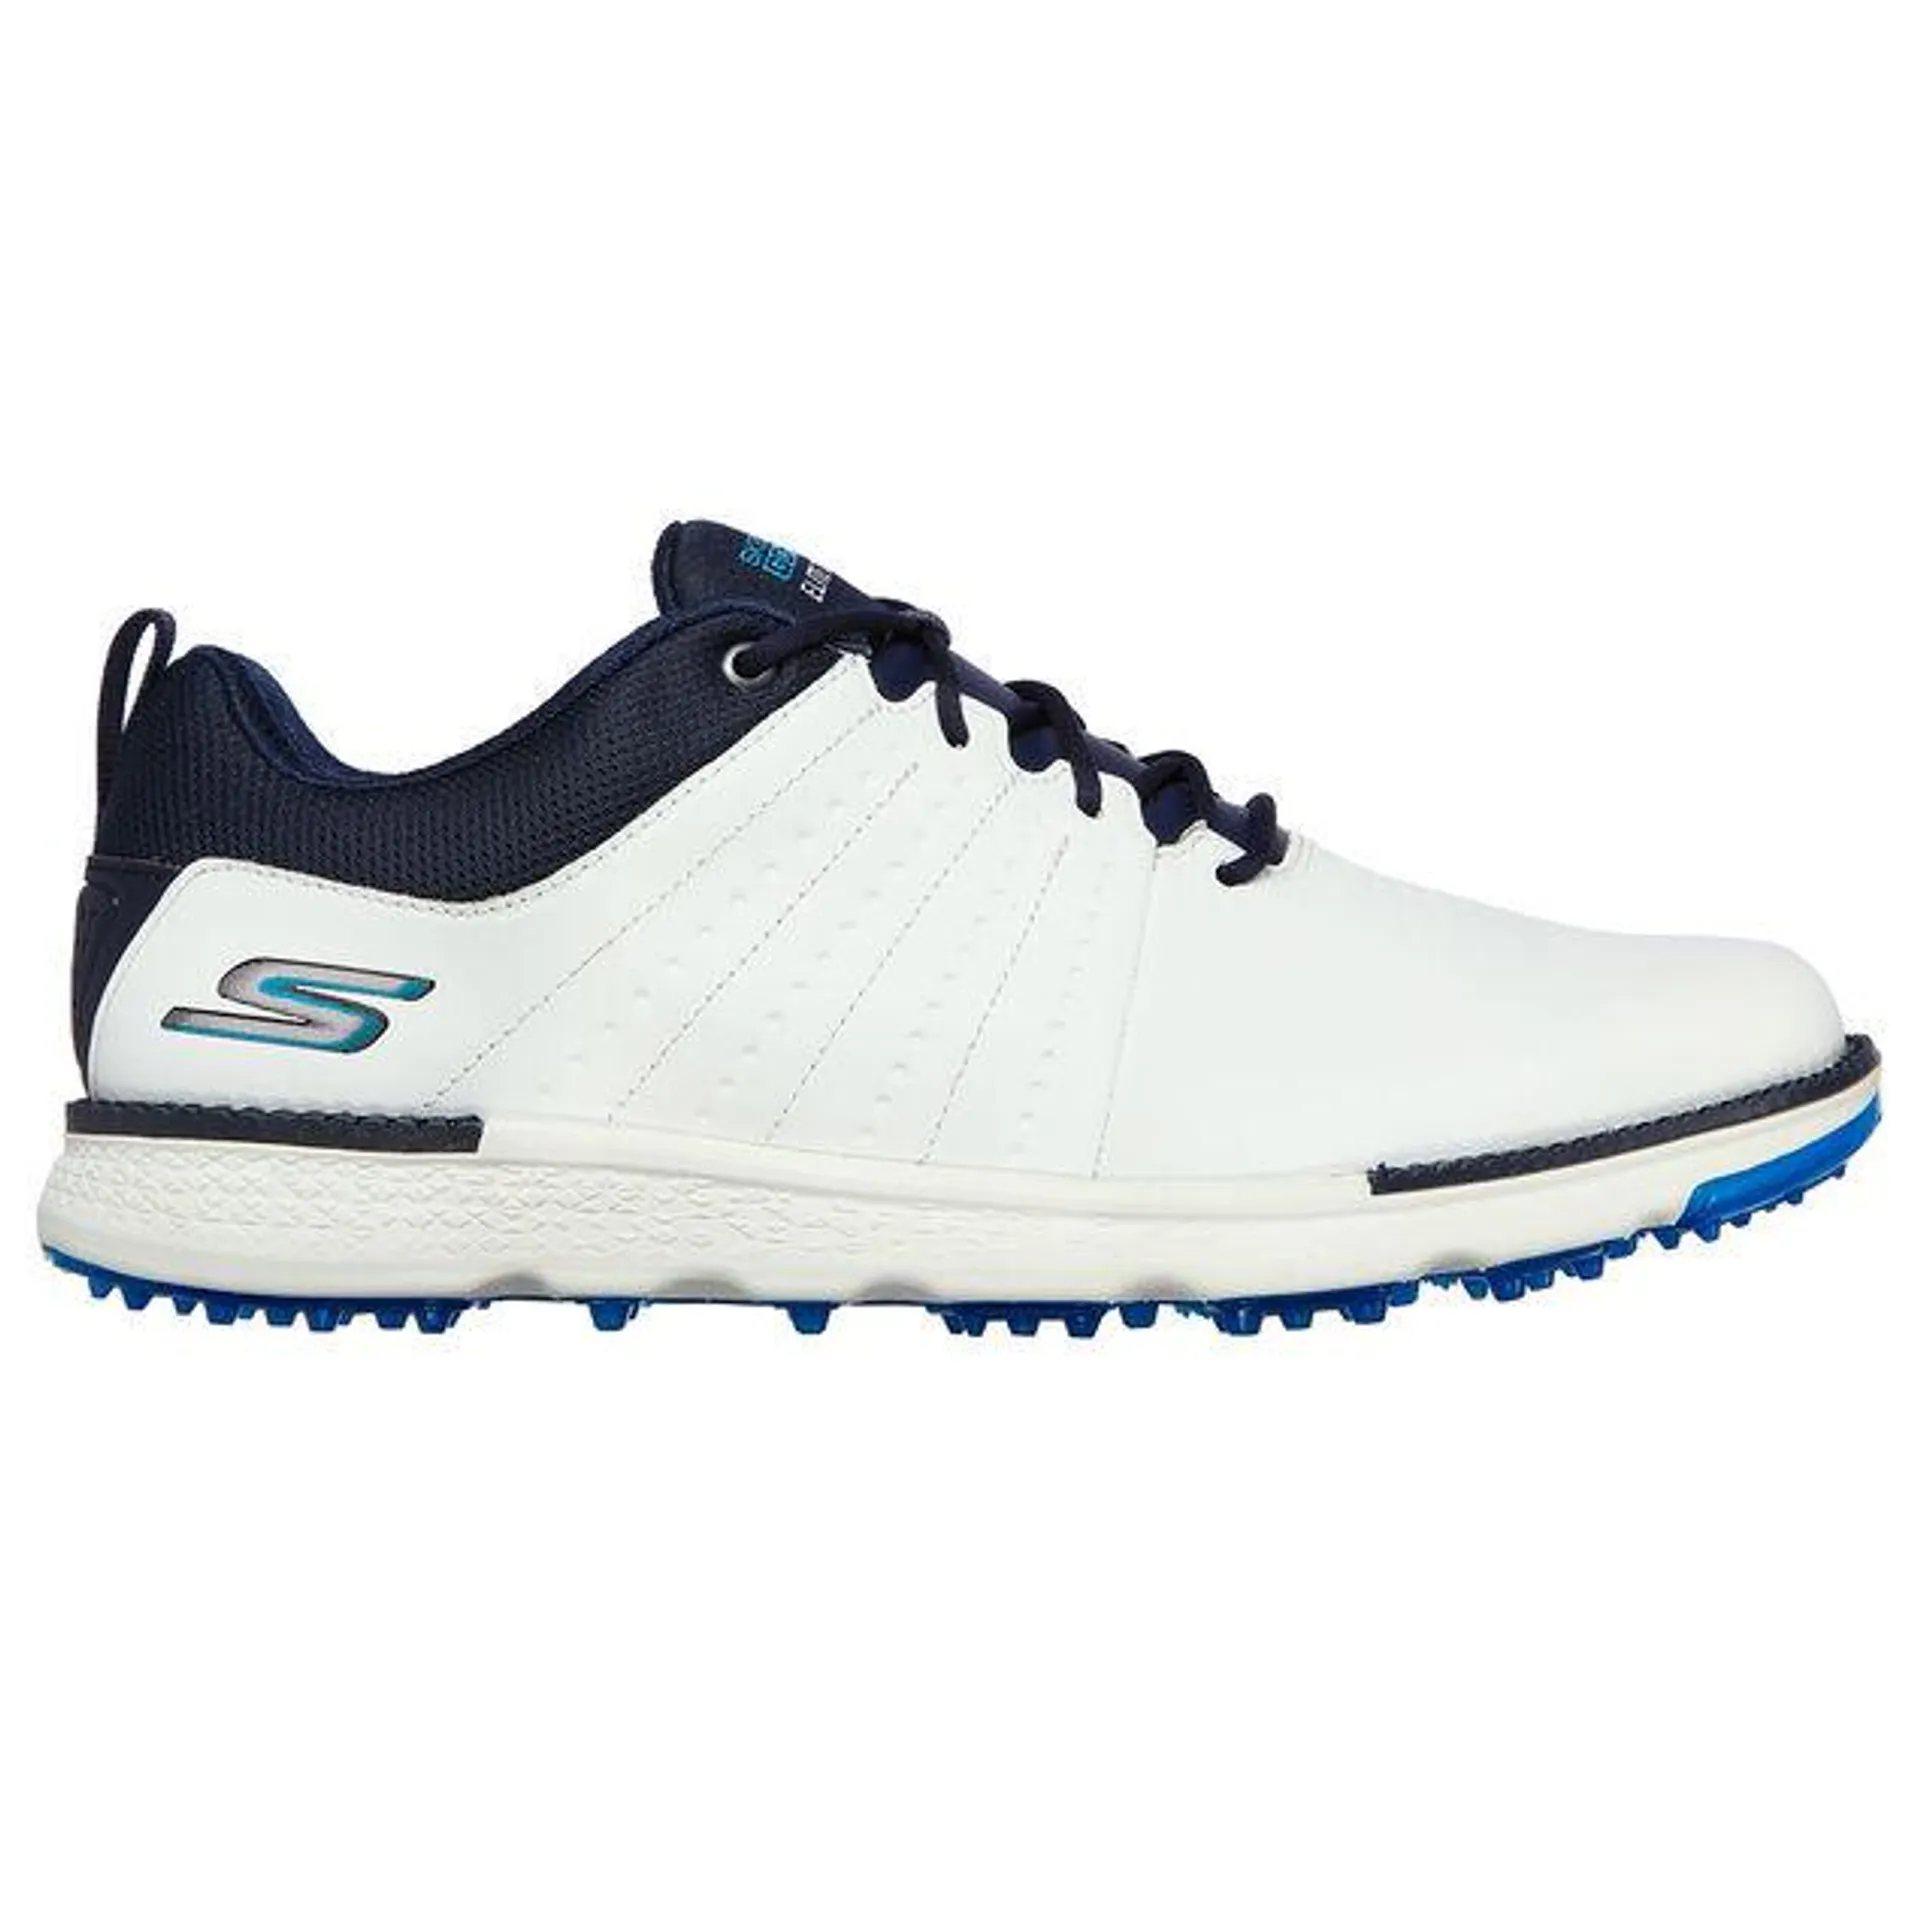 Skechers Men's GO Elite Tour Waterproof Spikeless Golf Shoes